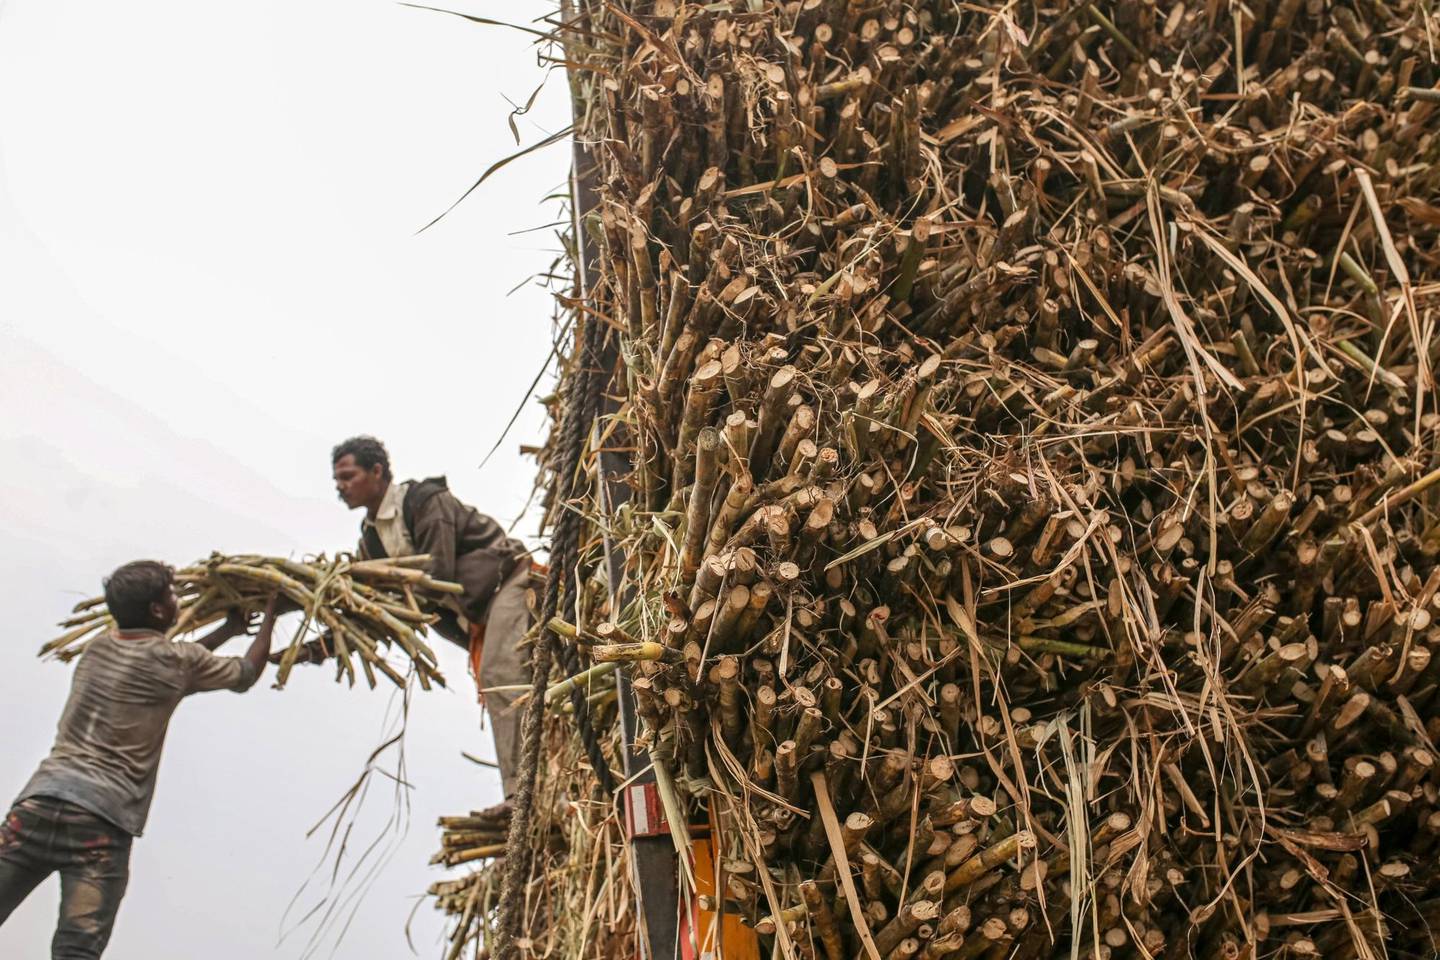 Trabajadores cargan un paquete de caña de azúcar en un camión mientras cosechan la cosecha en el distrito de Jalana de Maharashtra, India, a principios de marzo.